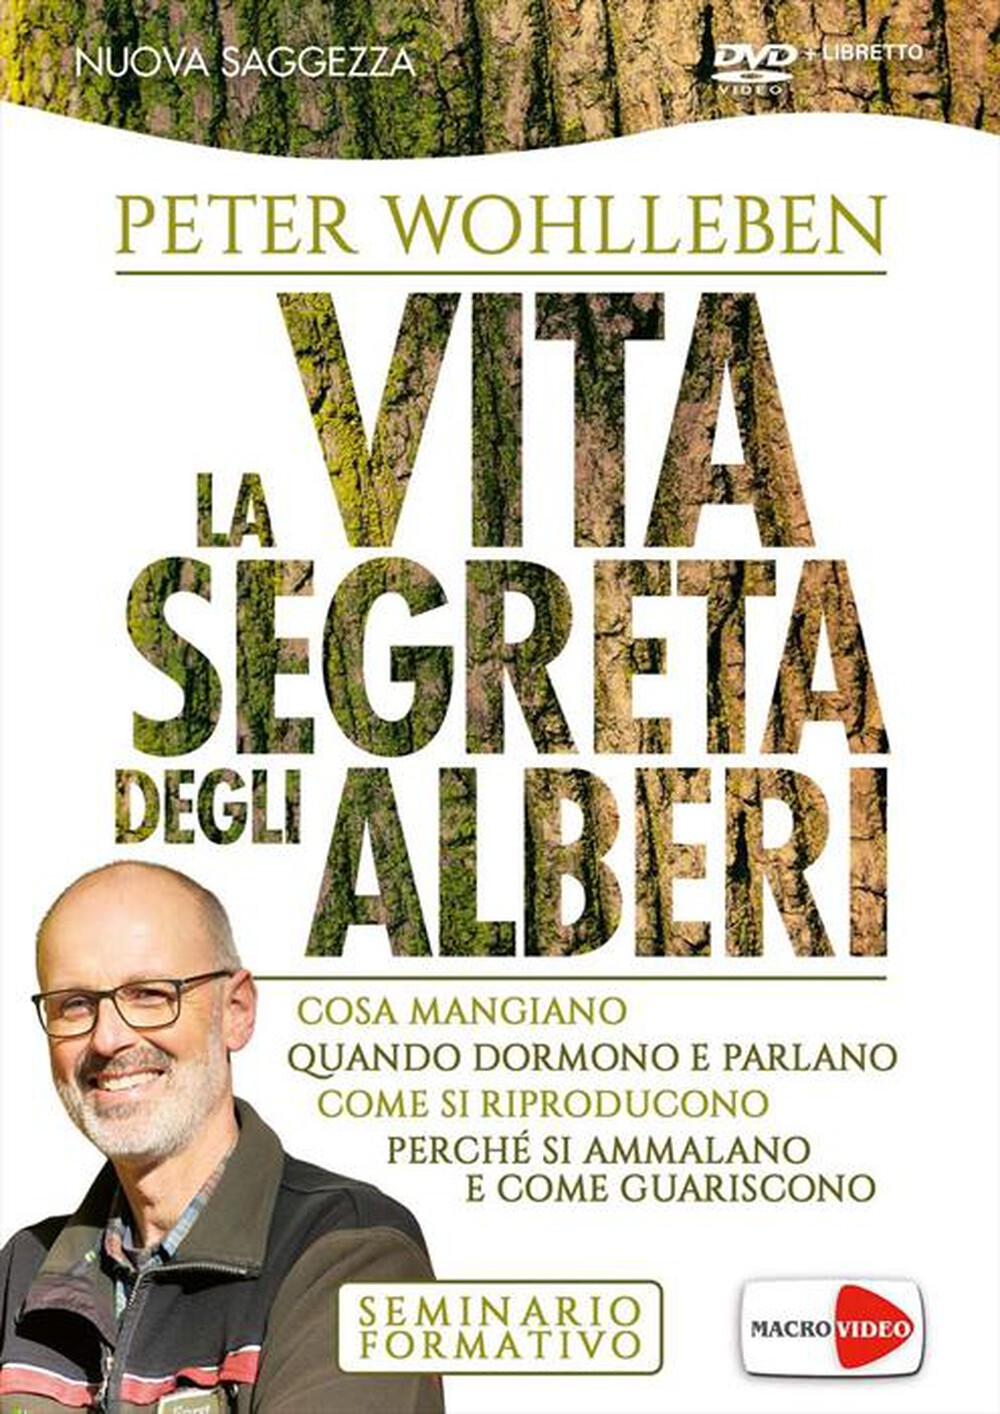 "MACRO VIDEO - Peter Wohlleben - La Vita Segreta Degli Alberi ("